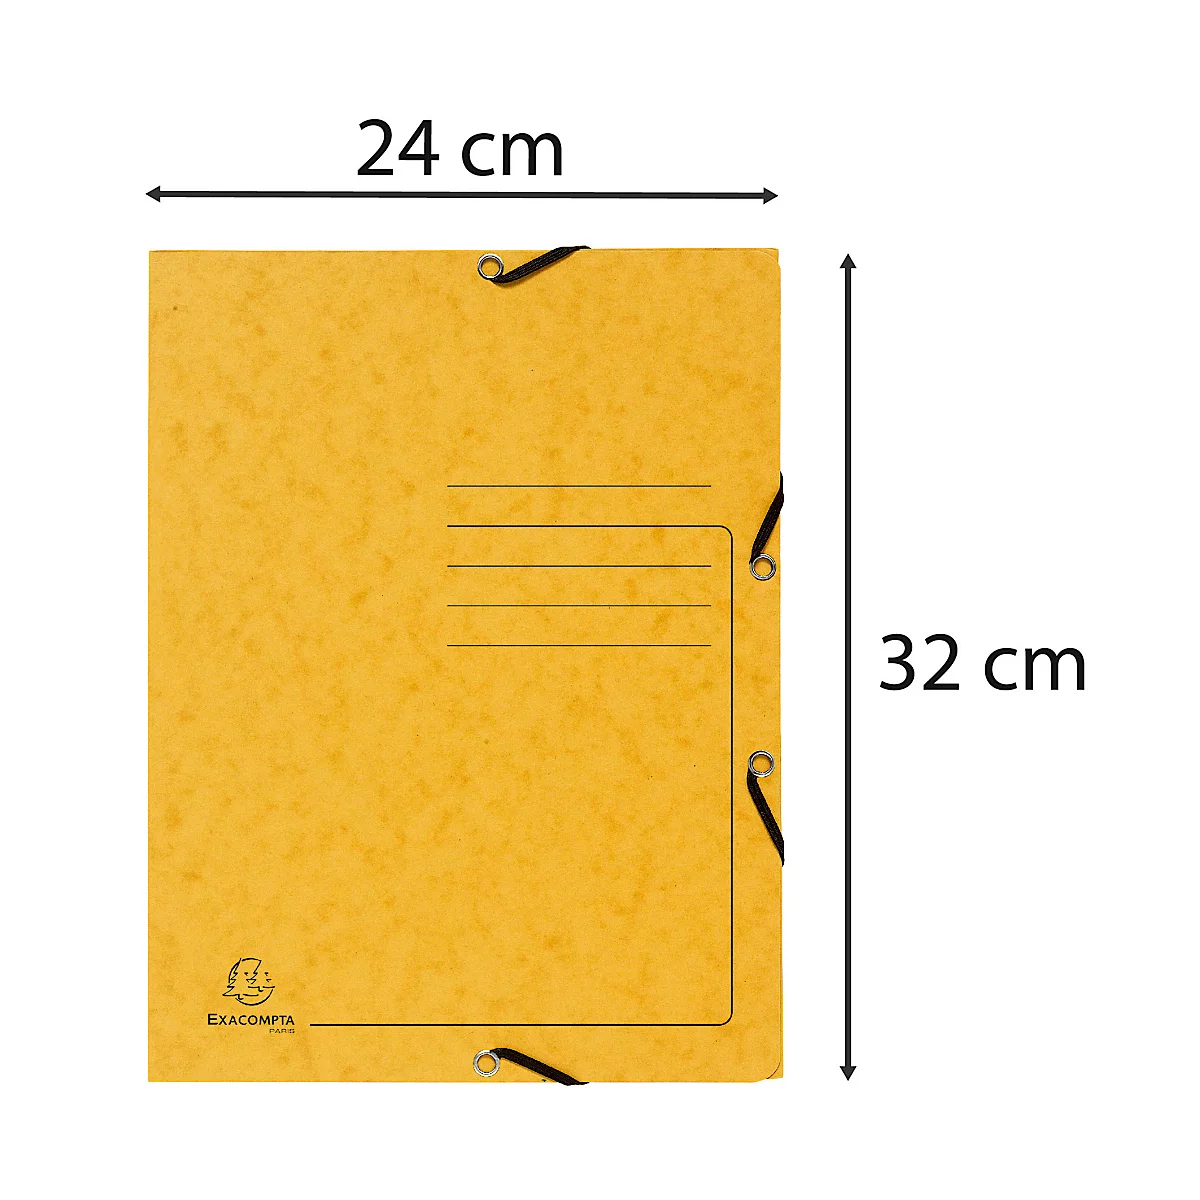 Exacompta Sammelmappe, DIN A4, mit Gummizug, 3 Klappen, beschriftbar, Colorspan-Karton, 355 g/m², gelb